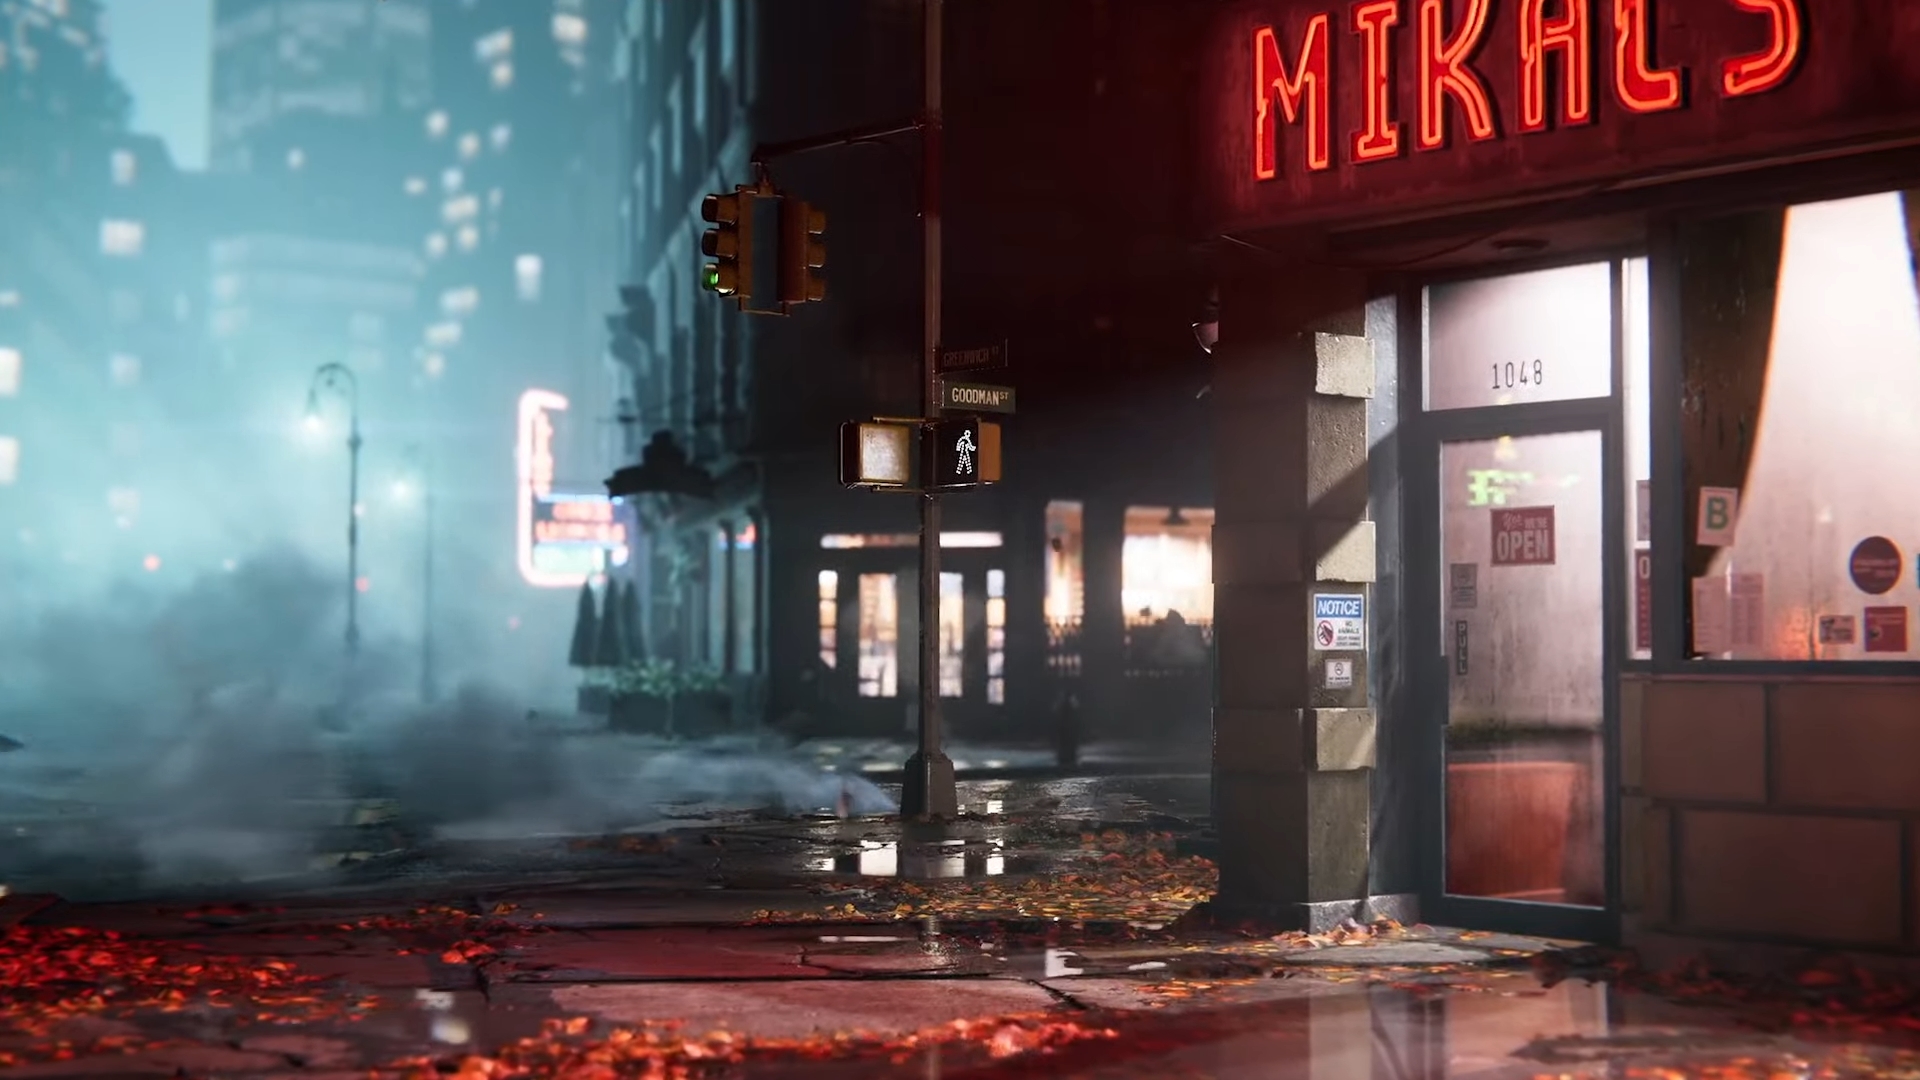 Скриншот из Marvel's Spider - Трейлер Man 2, показывающий угол улицы Нью-Йорка ночью, освещенный уличными фонарями и огнями внутри зданий